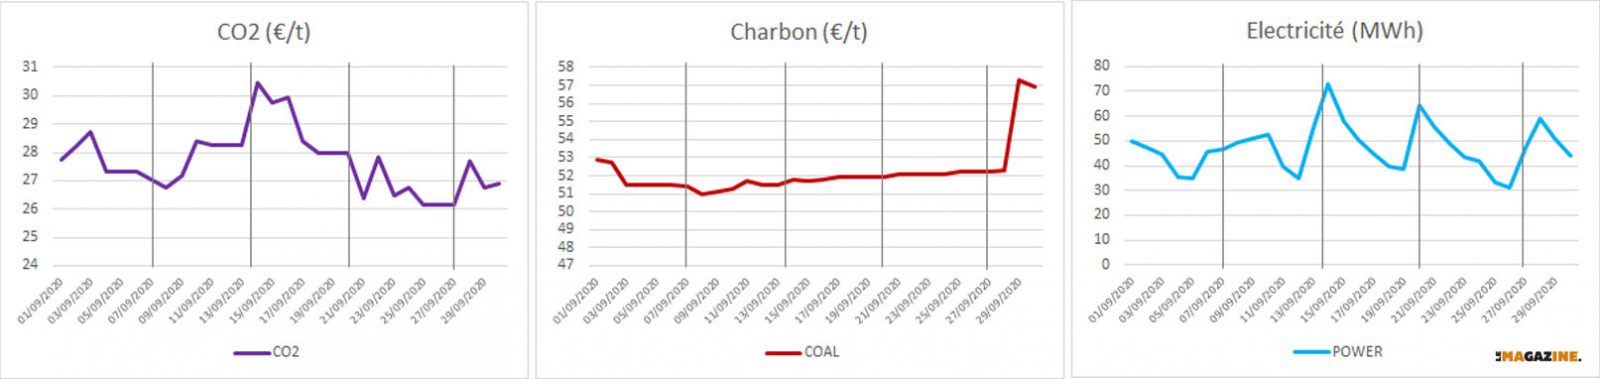 Prix du Charbon, du CO2 et de l'électricité en Septembre 2020